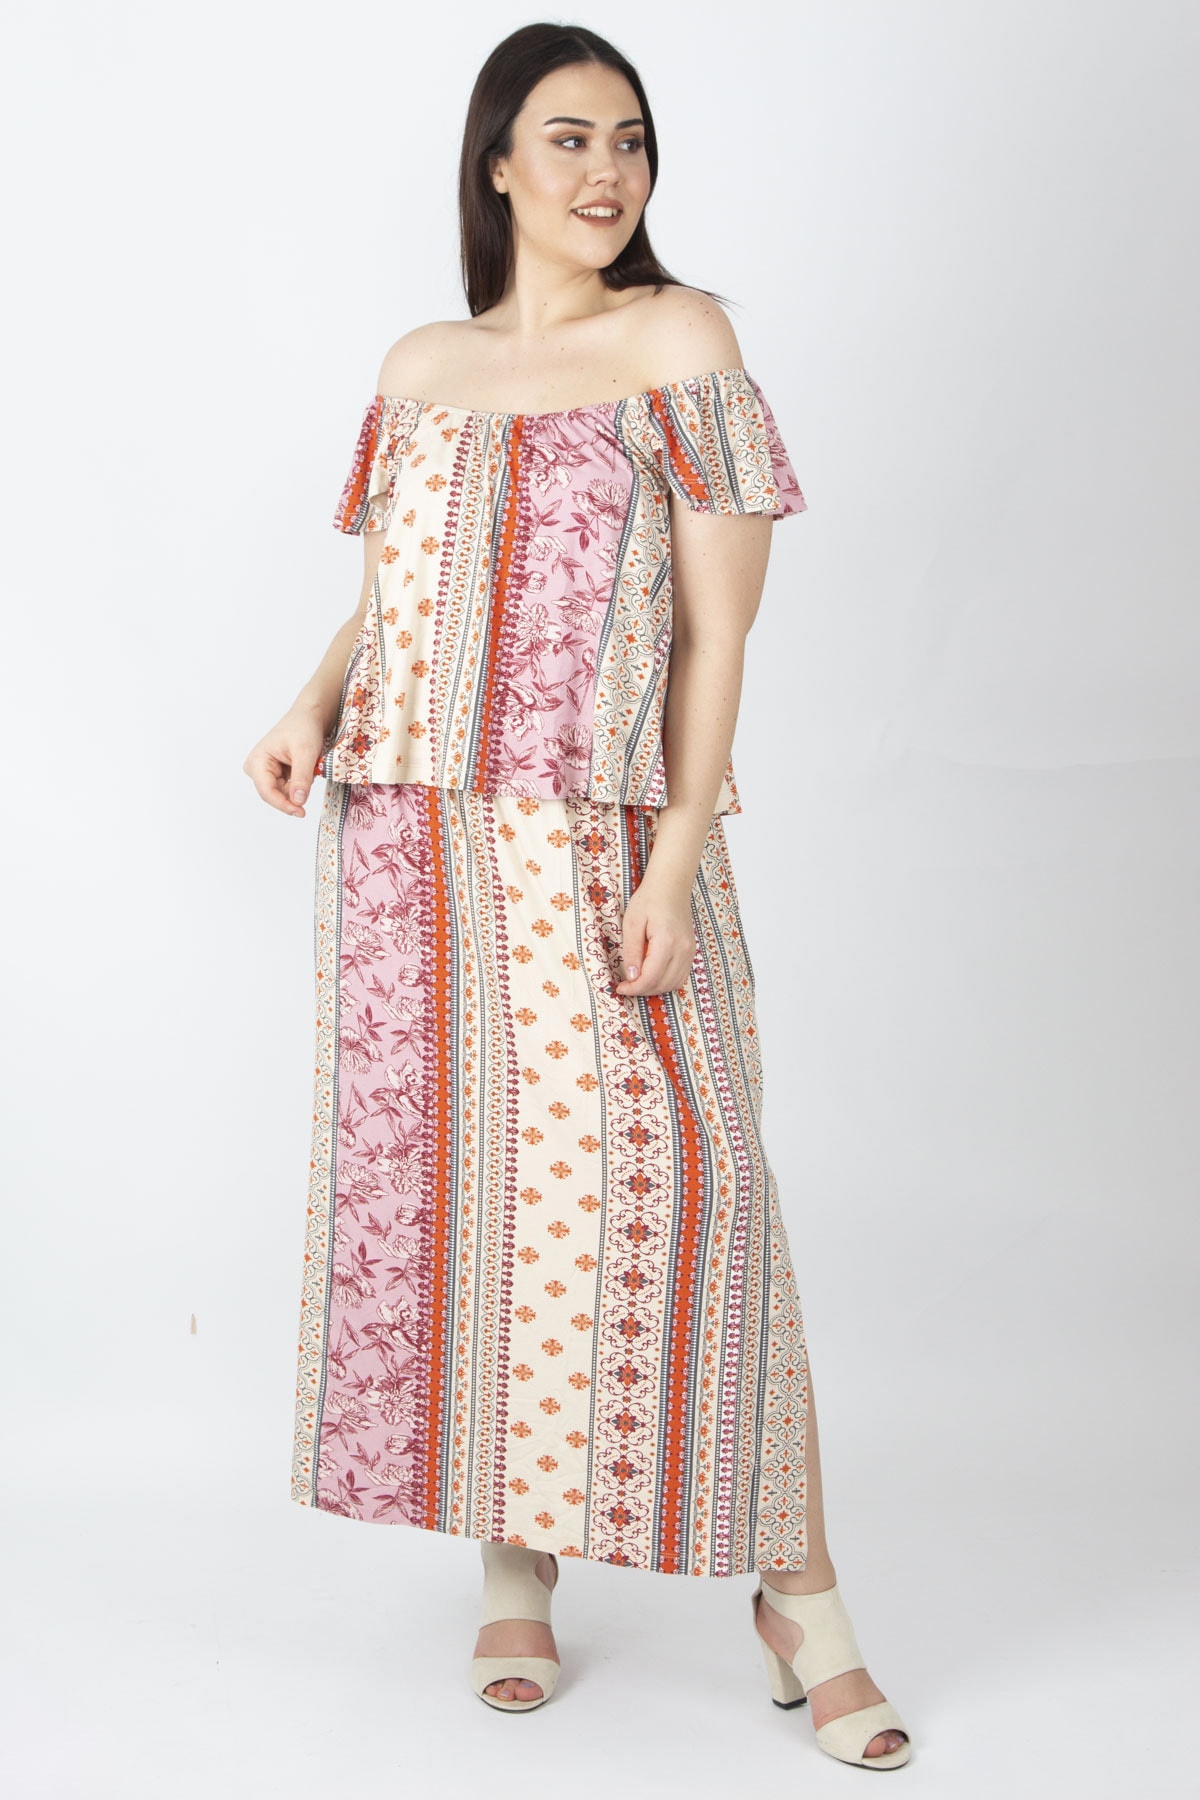 Şans Women's Plus Size Colorful Dress With Elastic Collar, Flounces Detailed